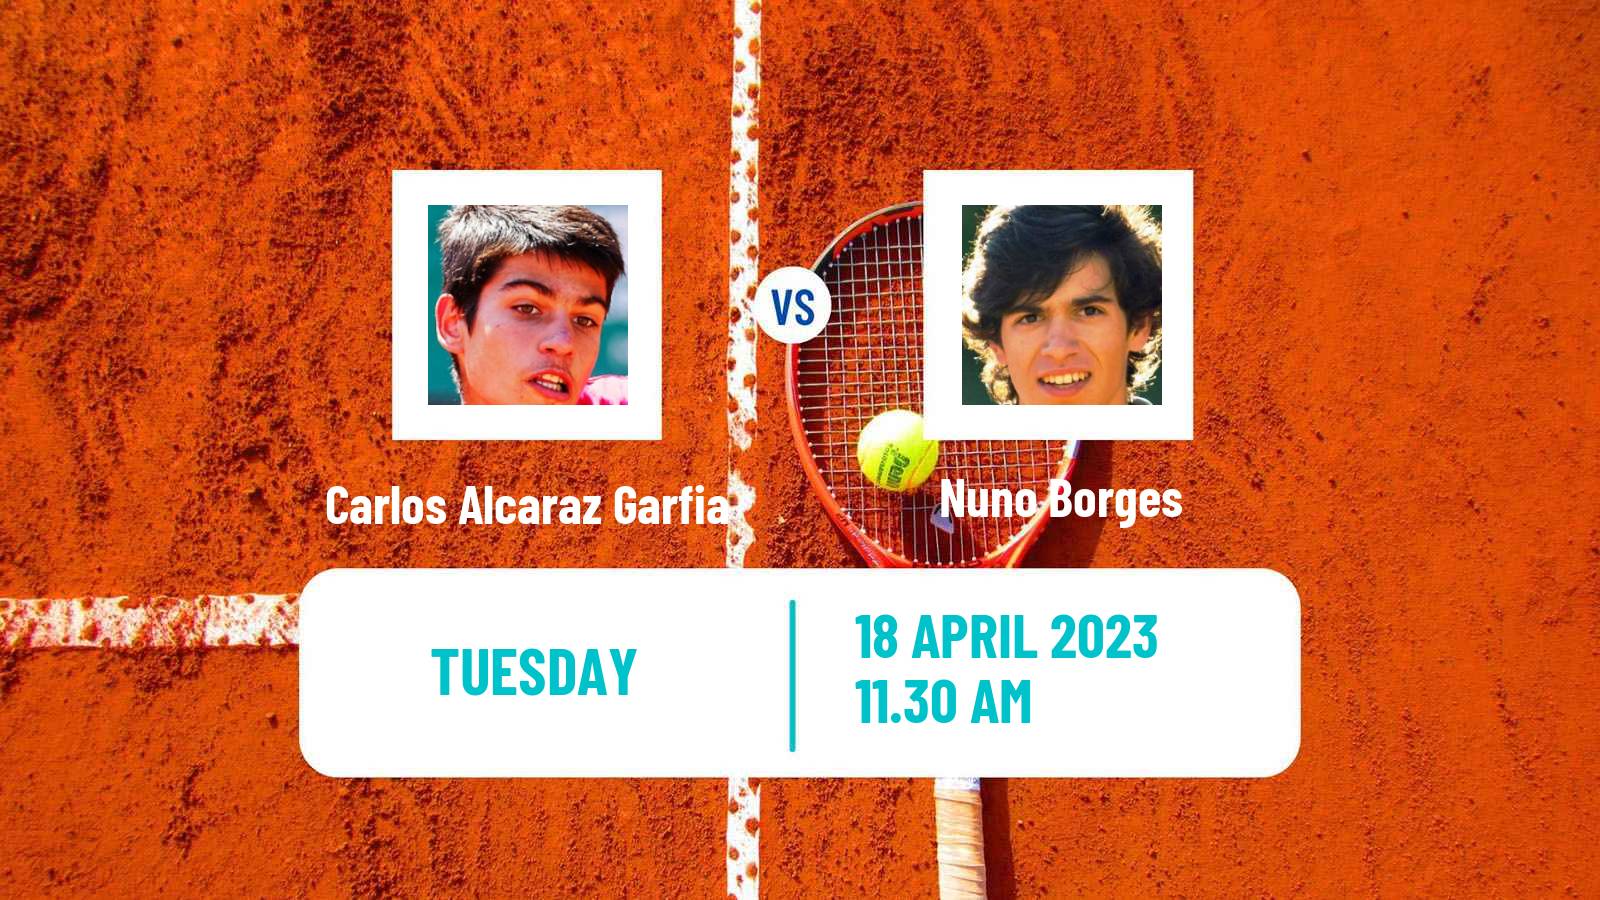 Tennis ATP Barcelona Carlos Alcaraz Garfia - Nuno Borges